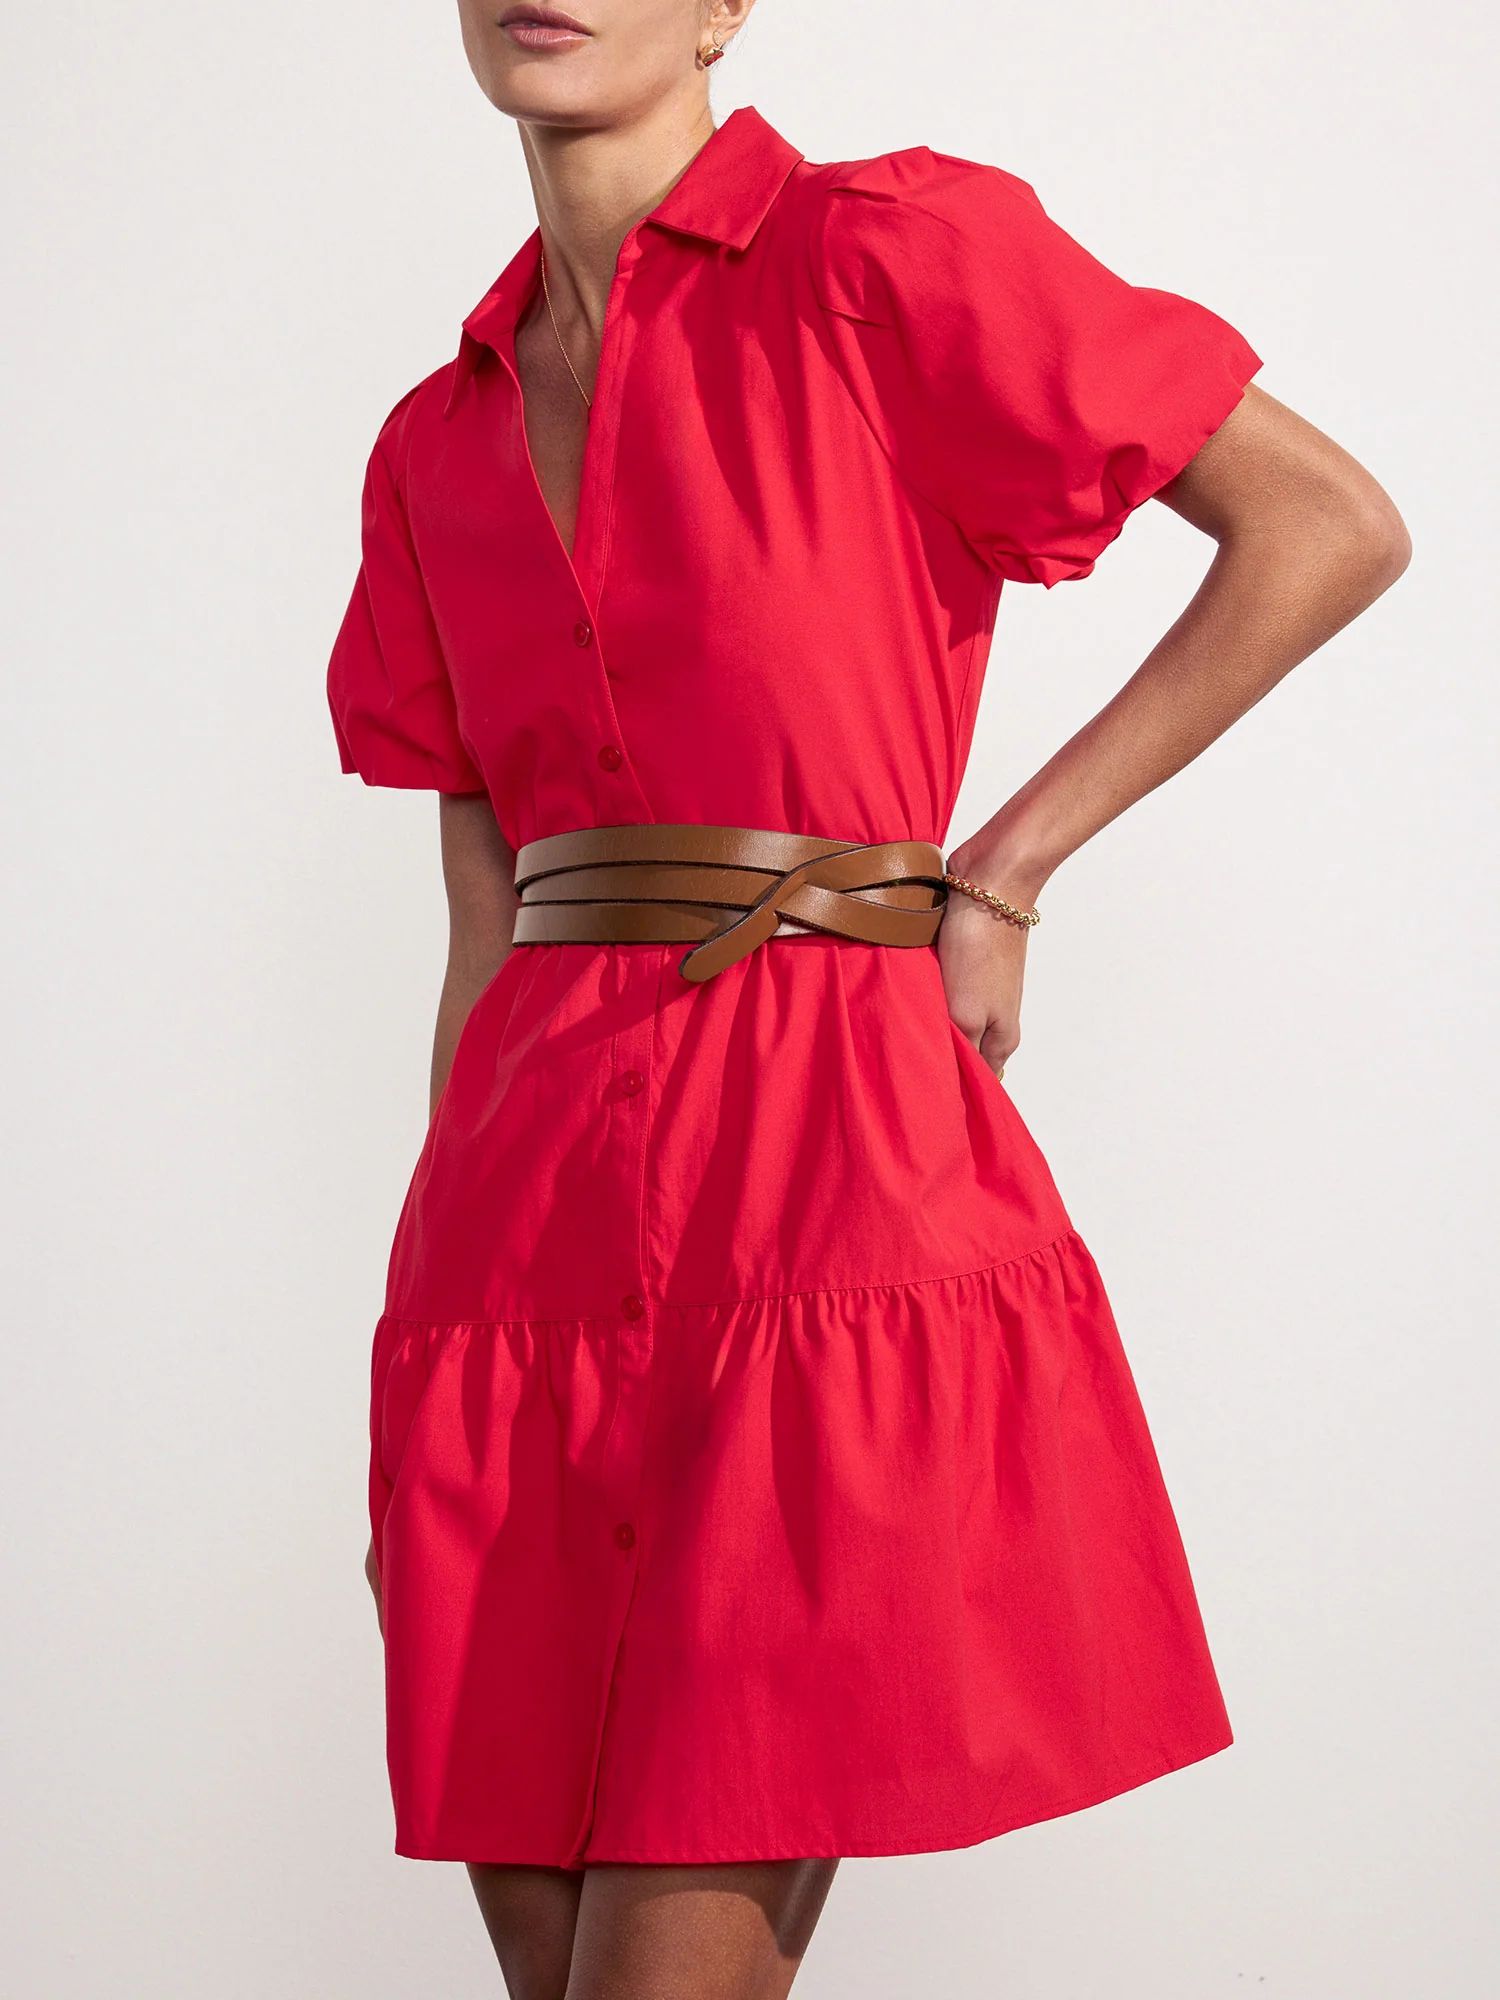 Brochu Walker | Women's Havana Mini Dress in Carmine Red | Brochu Walker